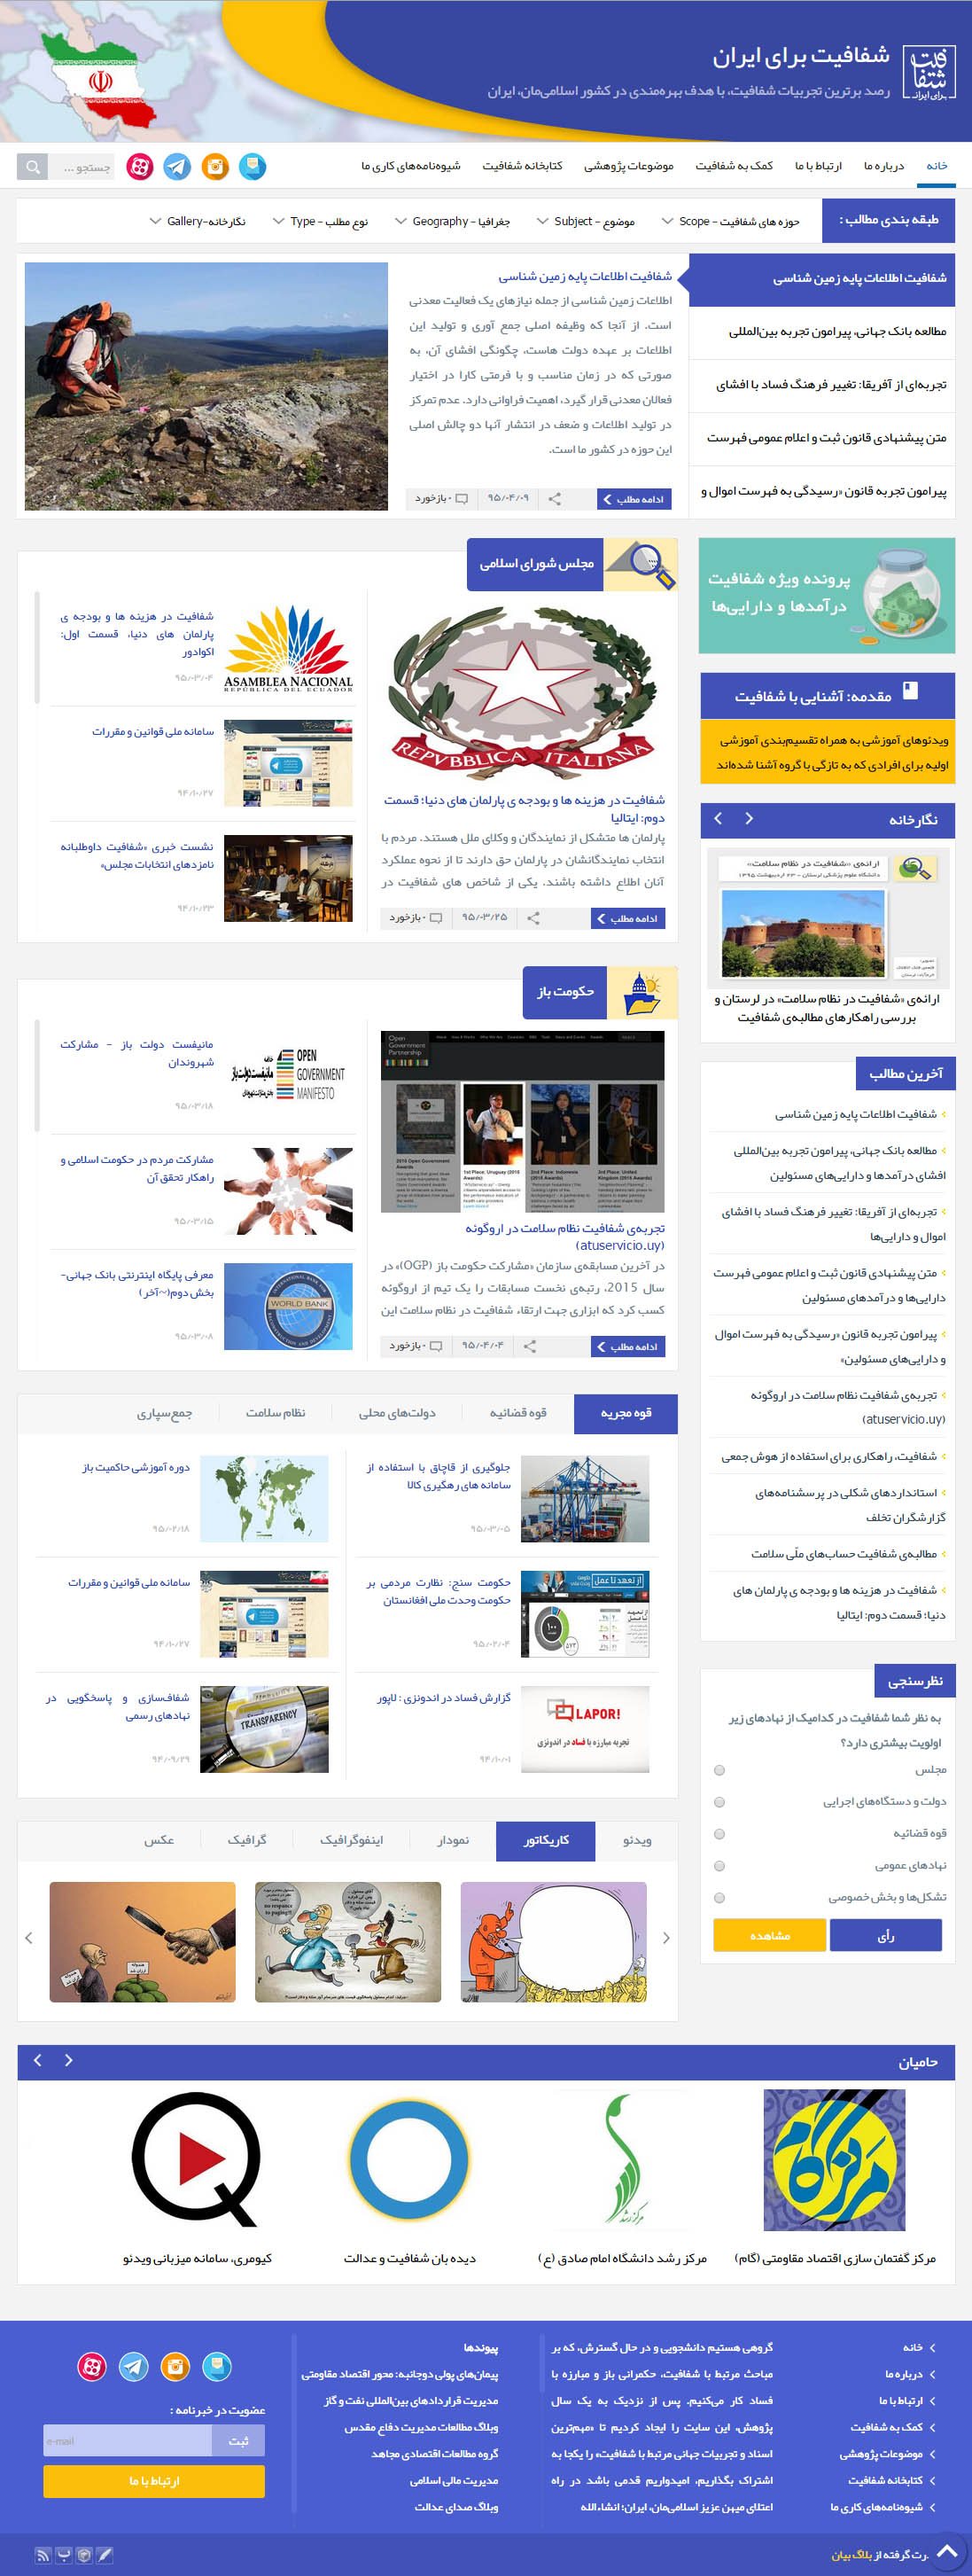 وبسایت خبری شفافیت برای ایران